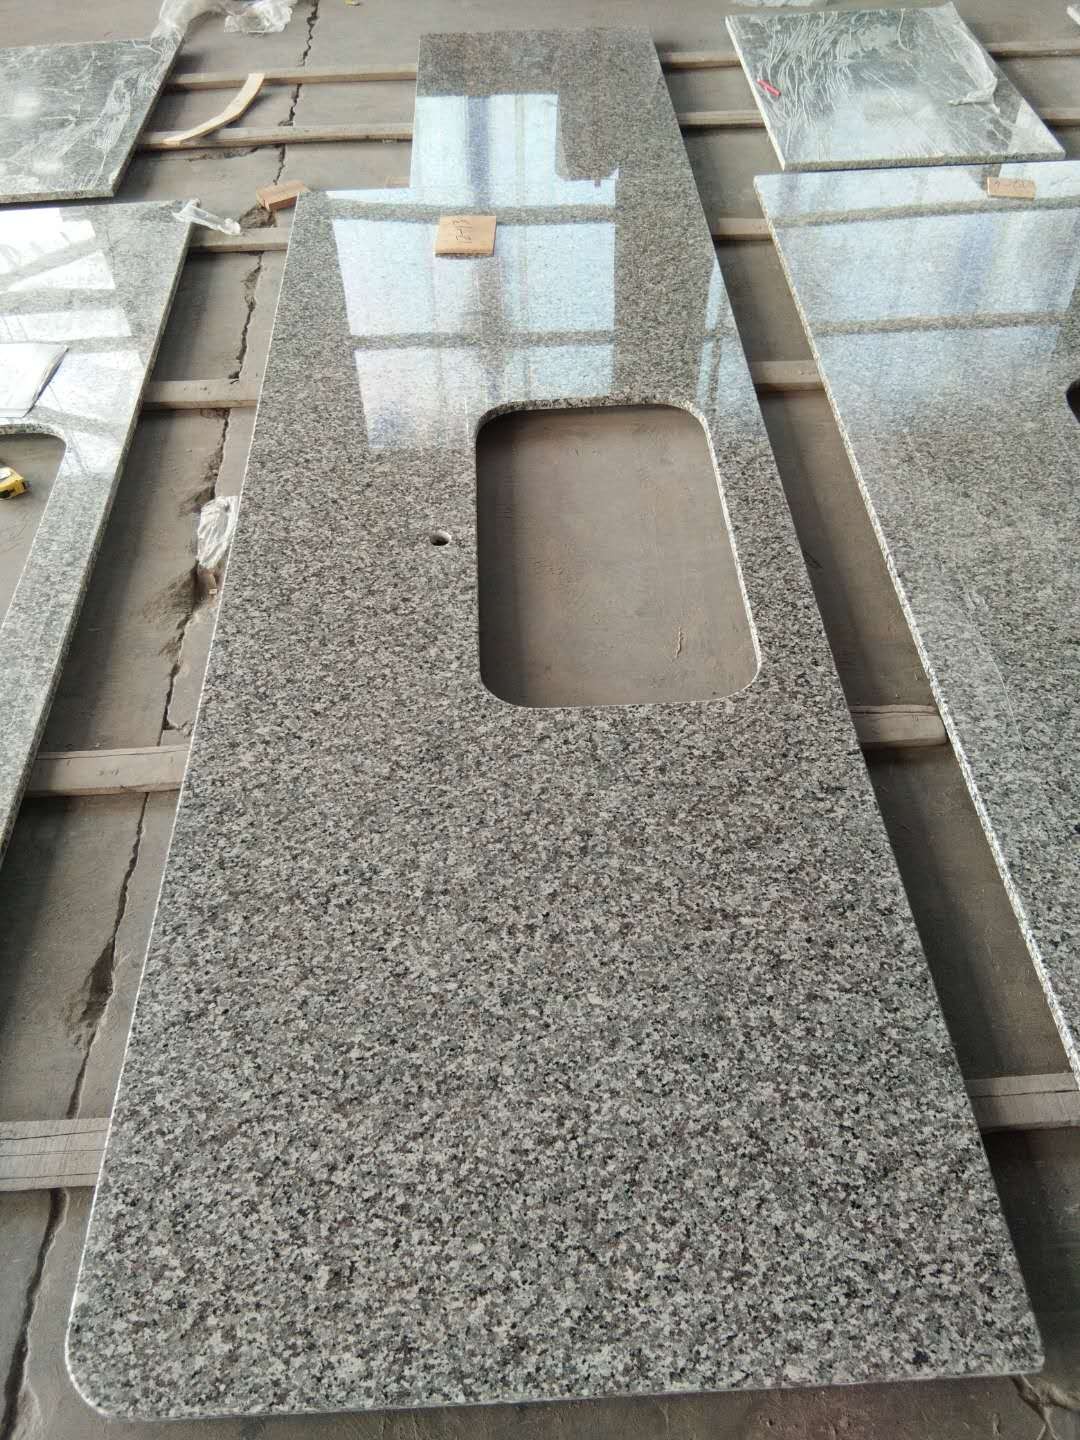 Swan Grey Granite Countertops